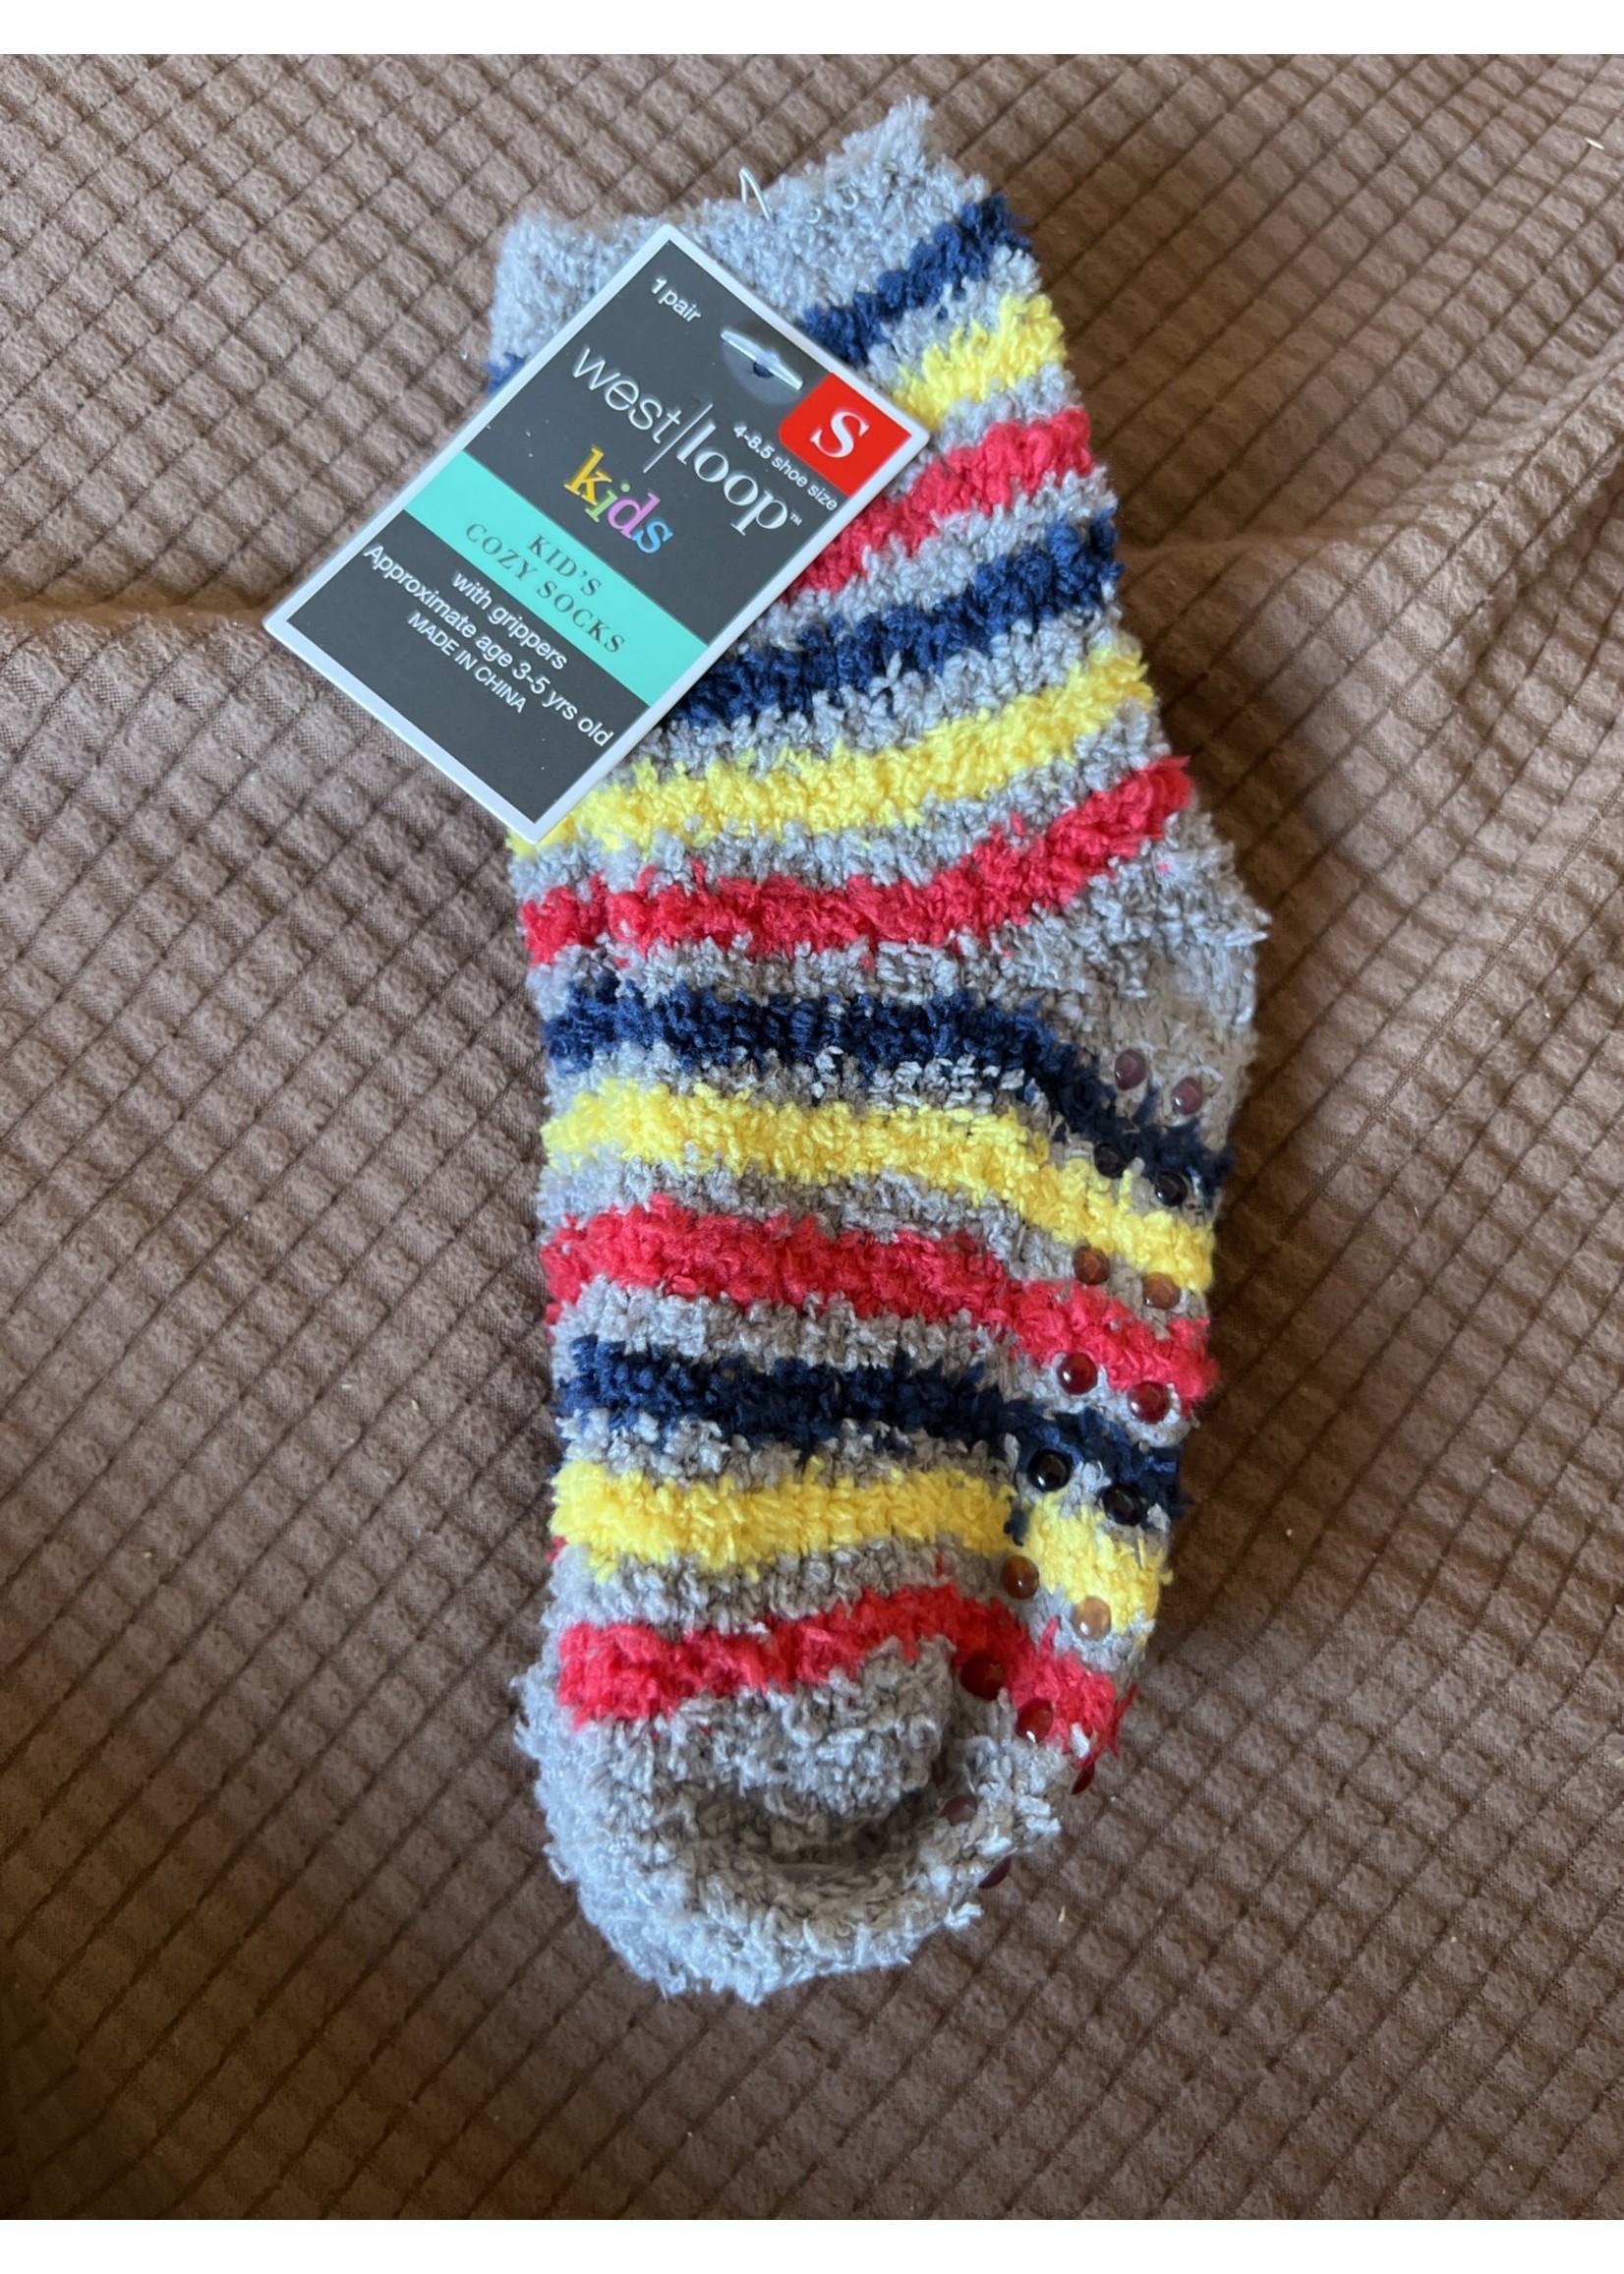 West Loop kids cozy socks w/ grippers S 4-8.5